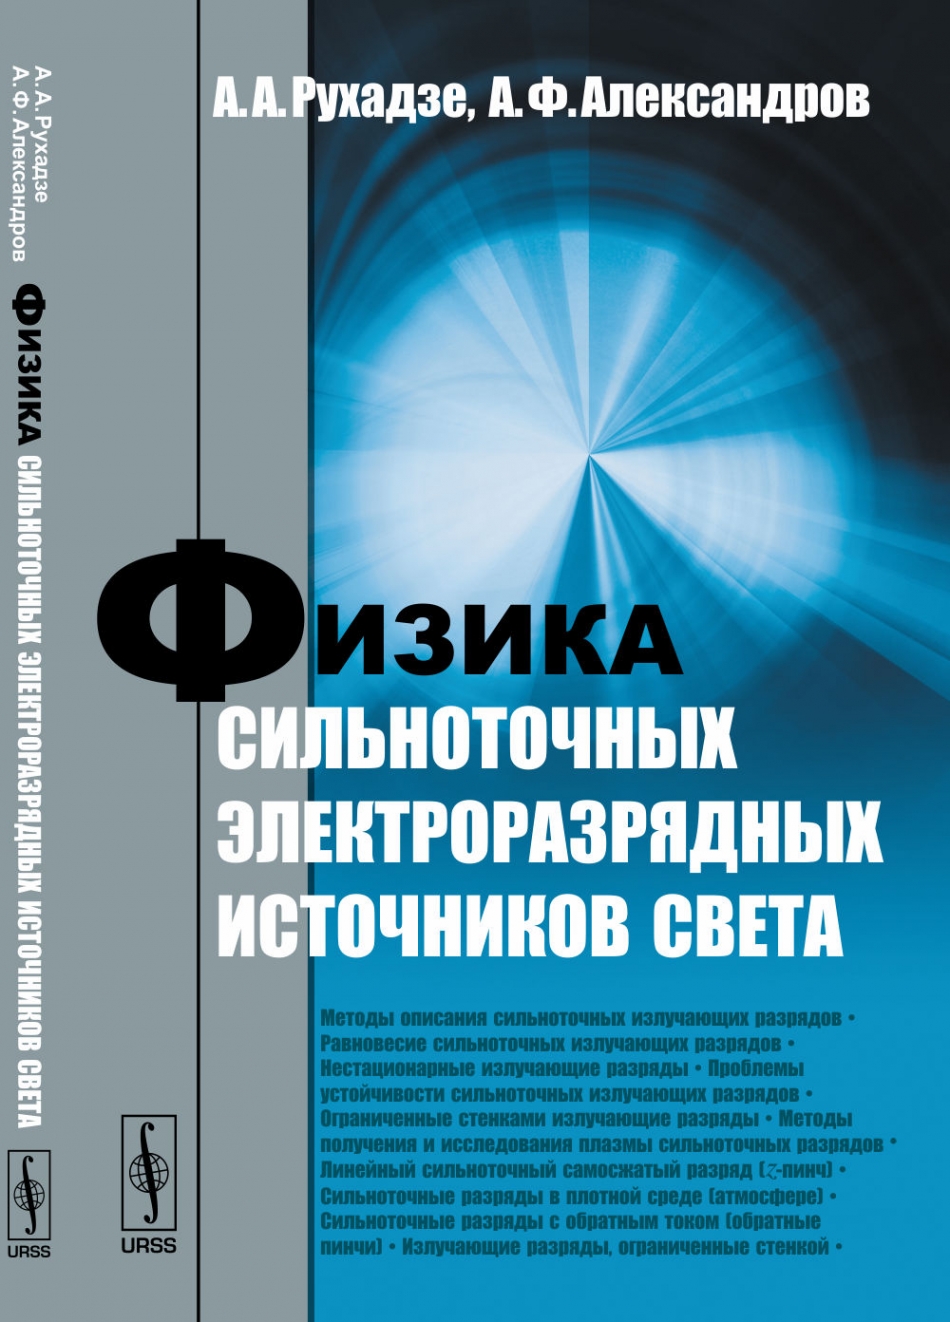 Рухадзе А.А., Александров А.Ф. Физика сильноточных электроразрядных источников света 